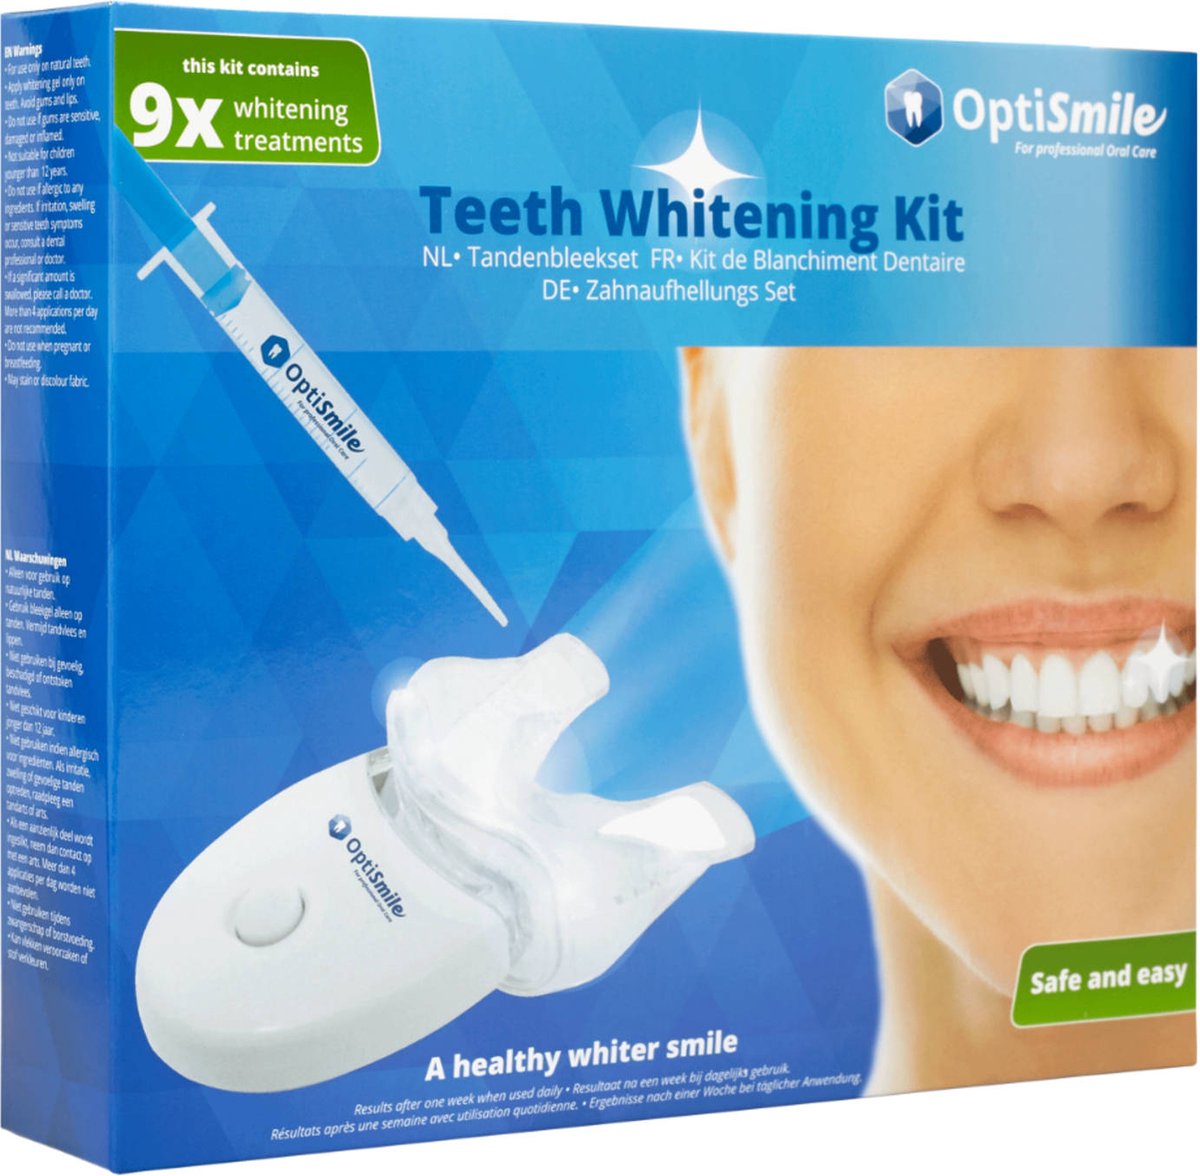 Tandenbleekset - Witte Tanden - Veilig - Handleiding - Teeth Whitening - Wittere Tanden - Tanden Bleken - Frisse Adem - Tandsteen - Tandplak -